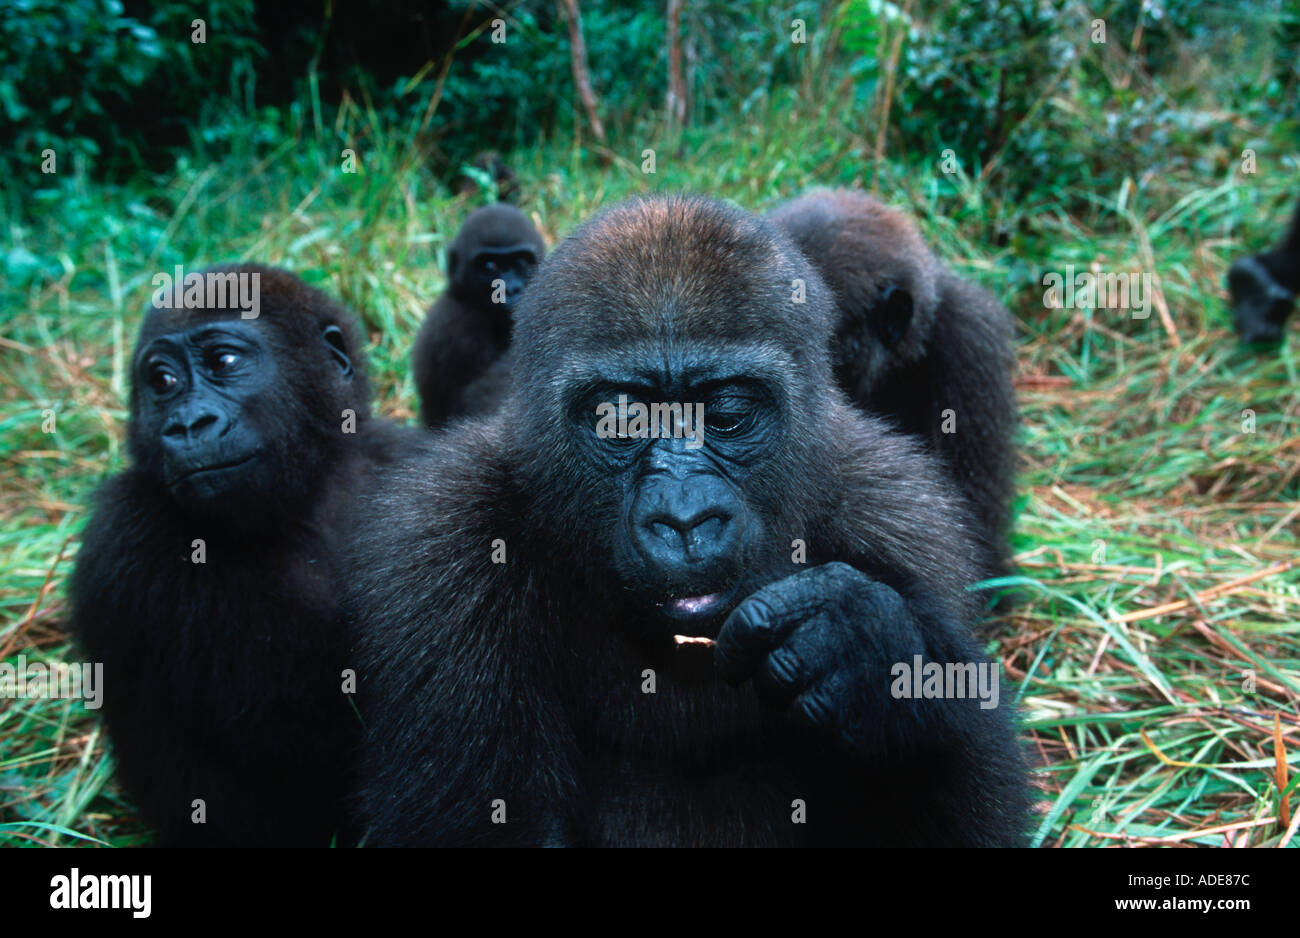 Western pianura gorilla gorilla orfani reintrodotta nel selvatica minacciate di estinzione Projet Protection des Gorilles Gabon Congo Foto Stock